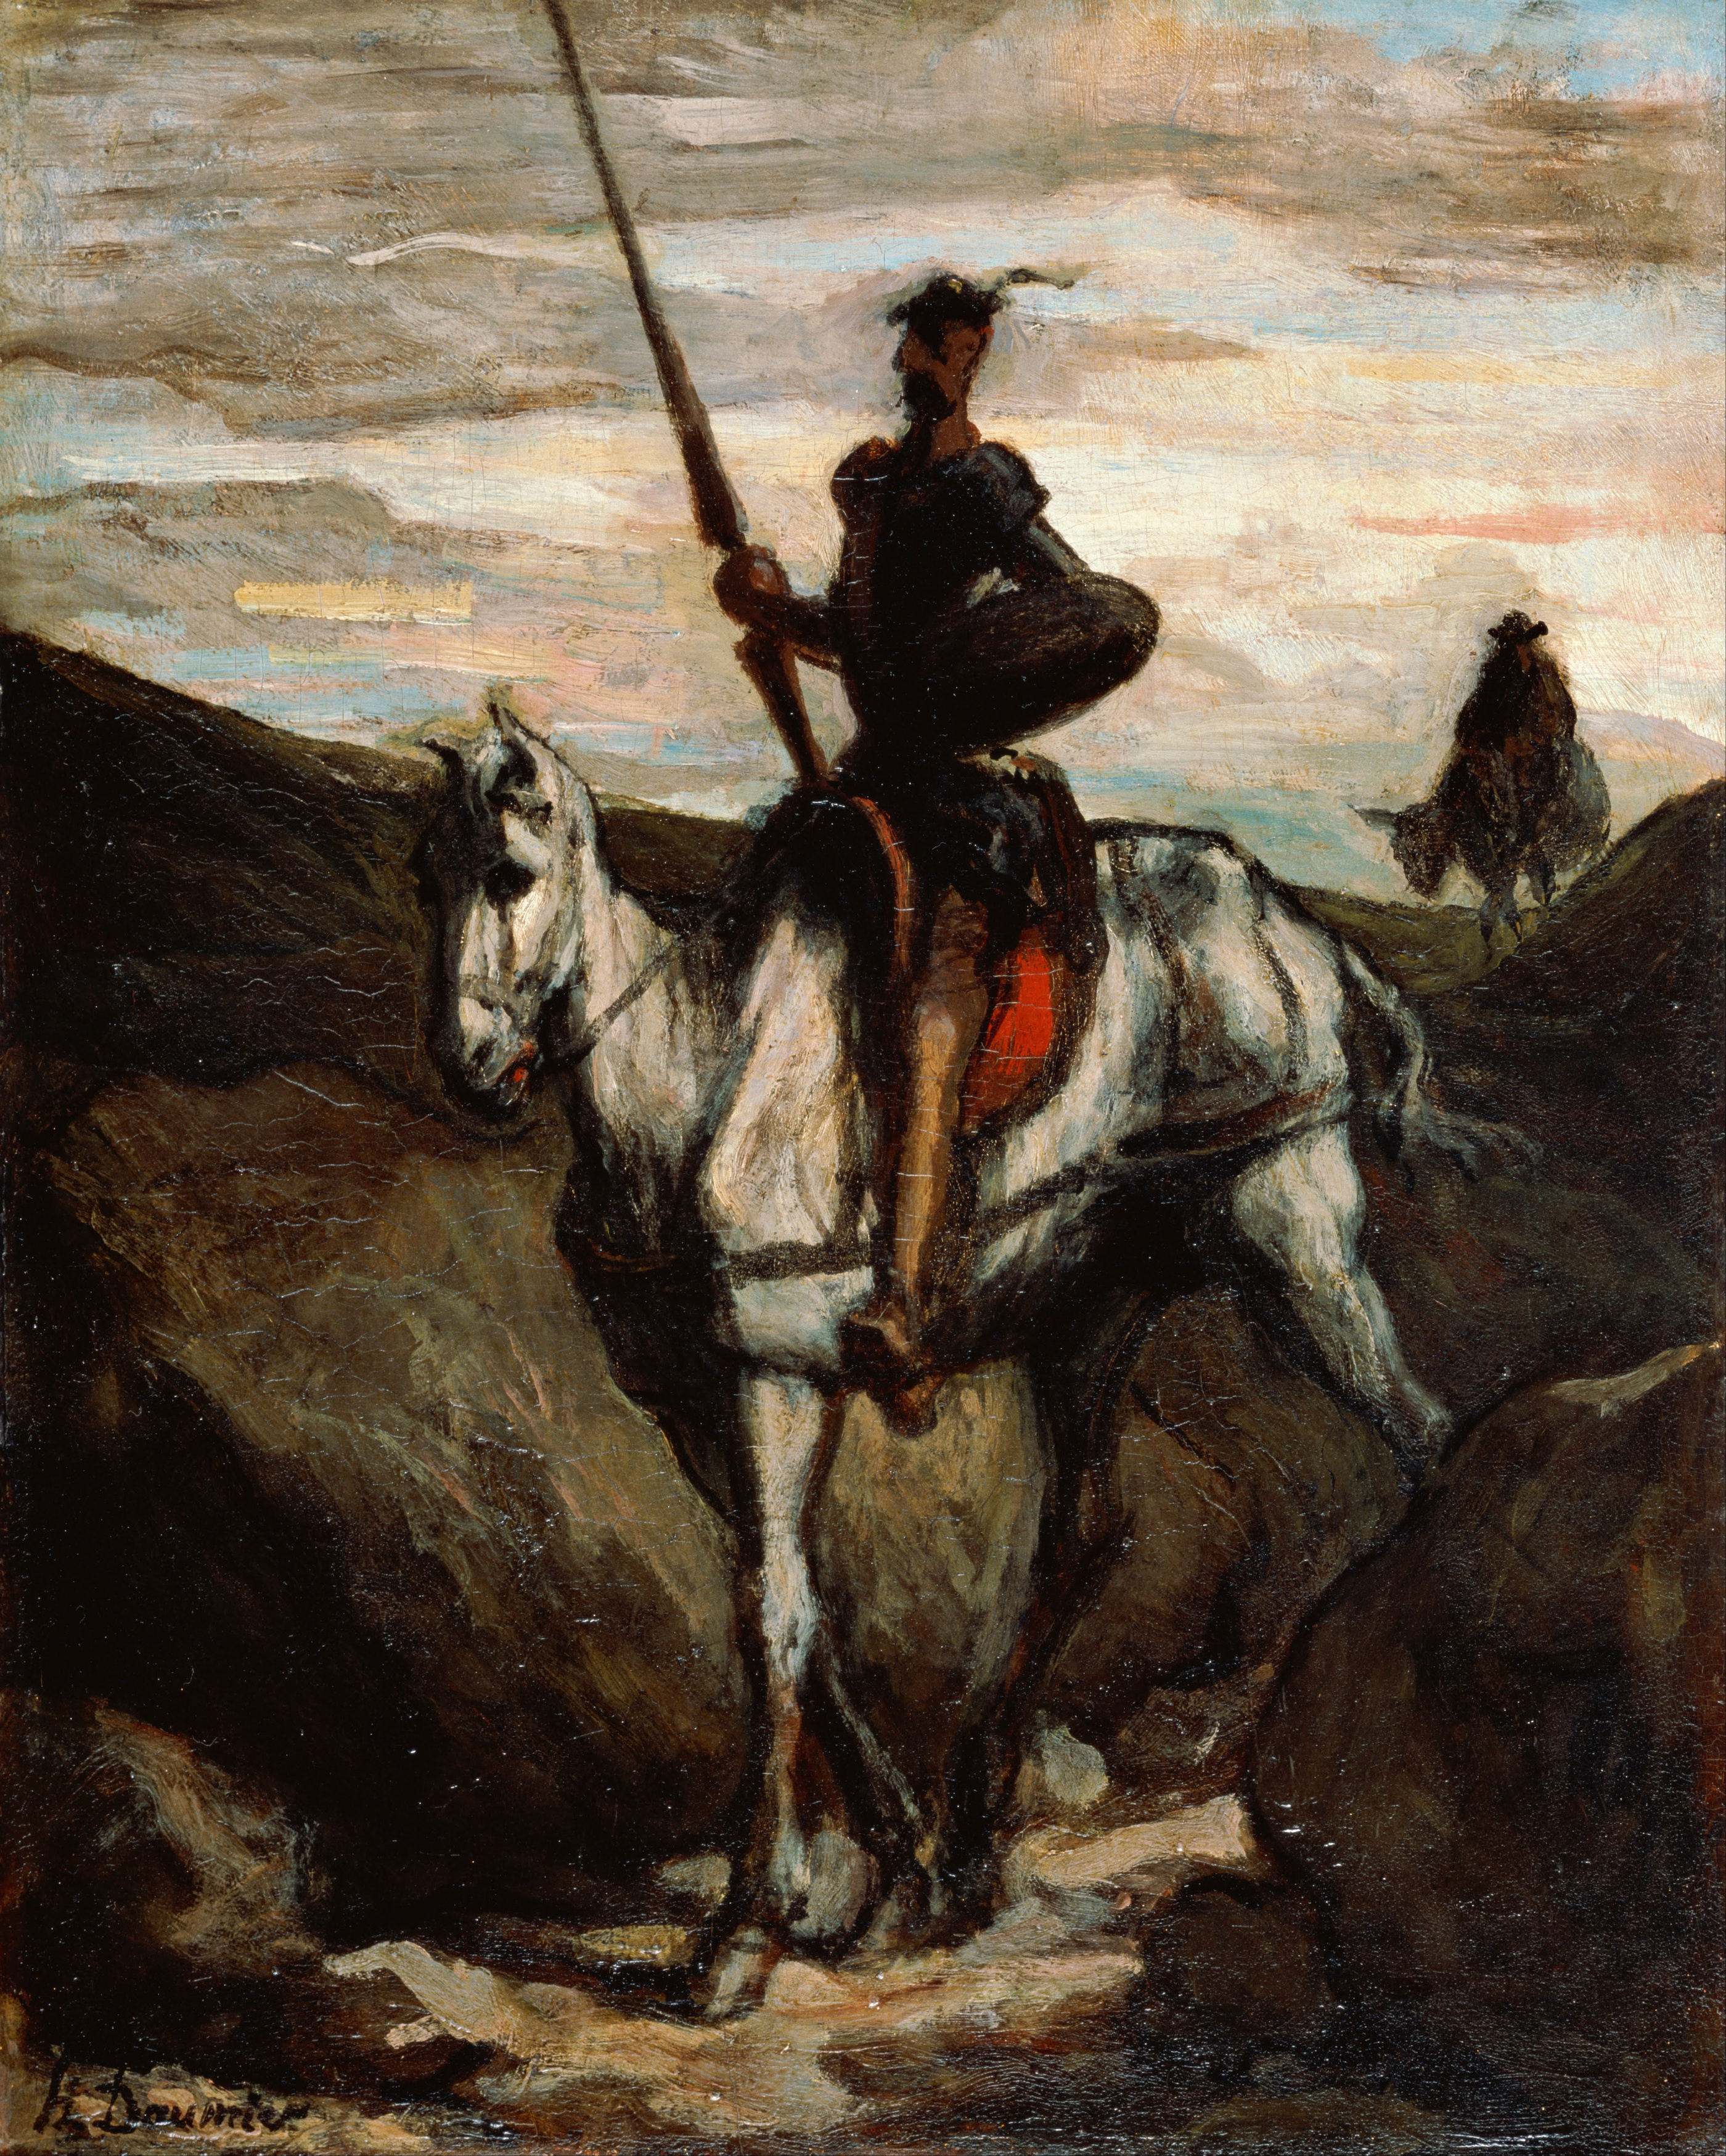 Don Quixote dans les Montagnes by Honoré Daumier - c. 1850 Musée d'art Bridgestone